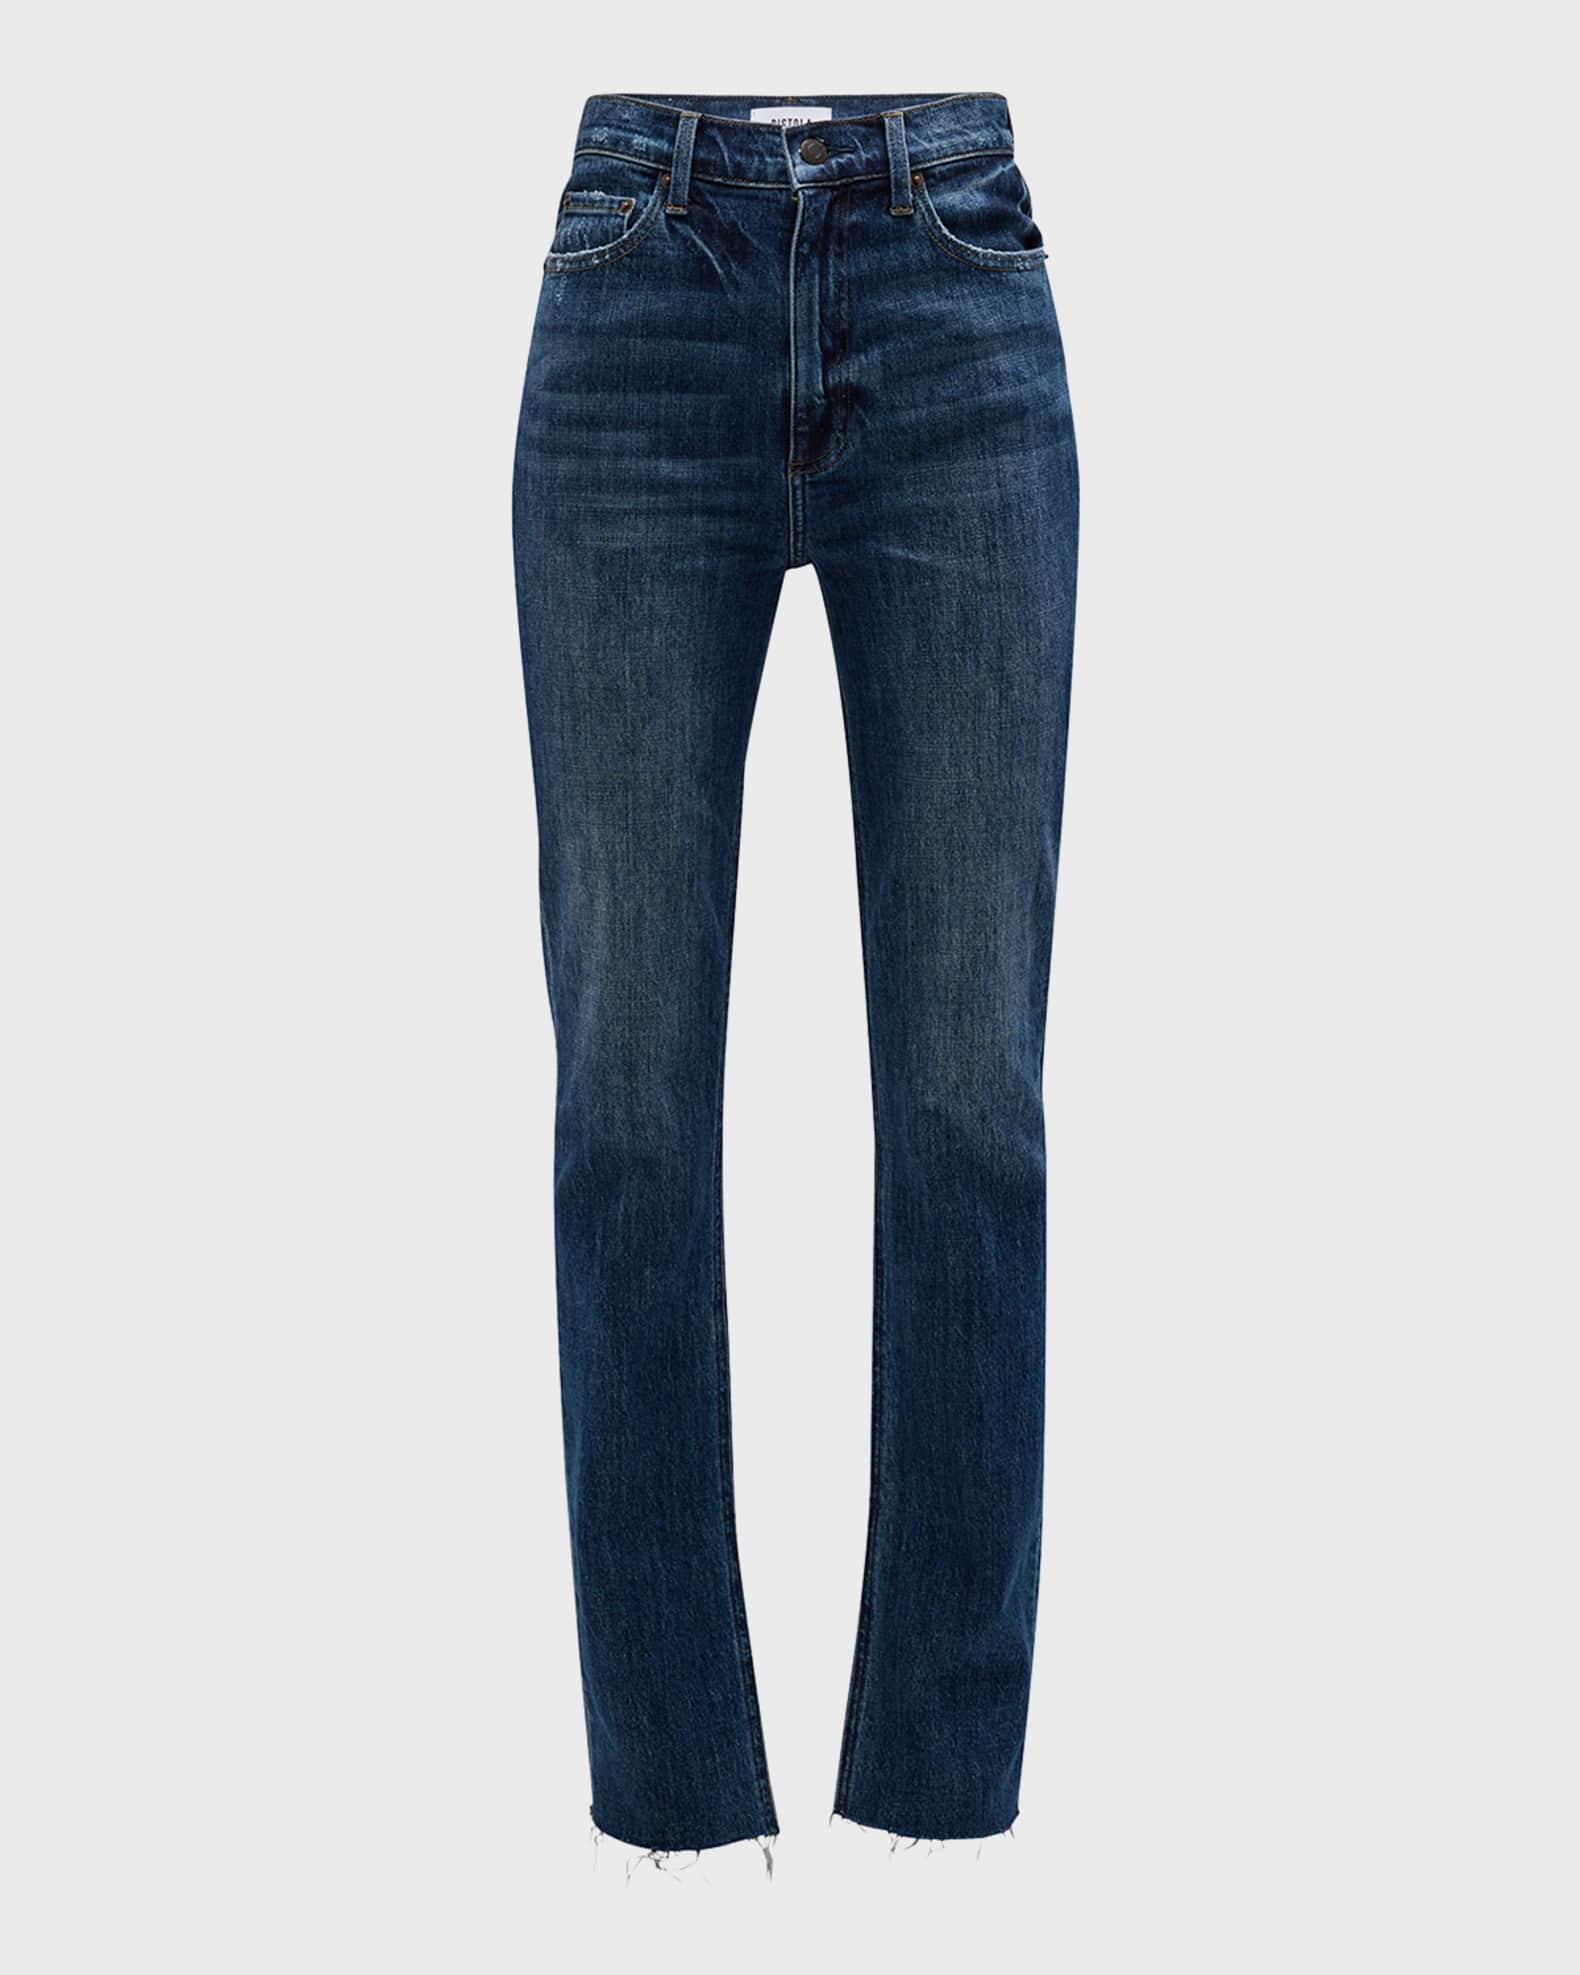 Colleen Split Hem Jeans by PISTOLA for $30